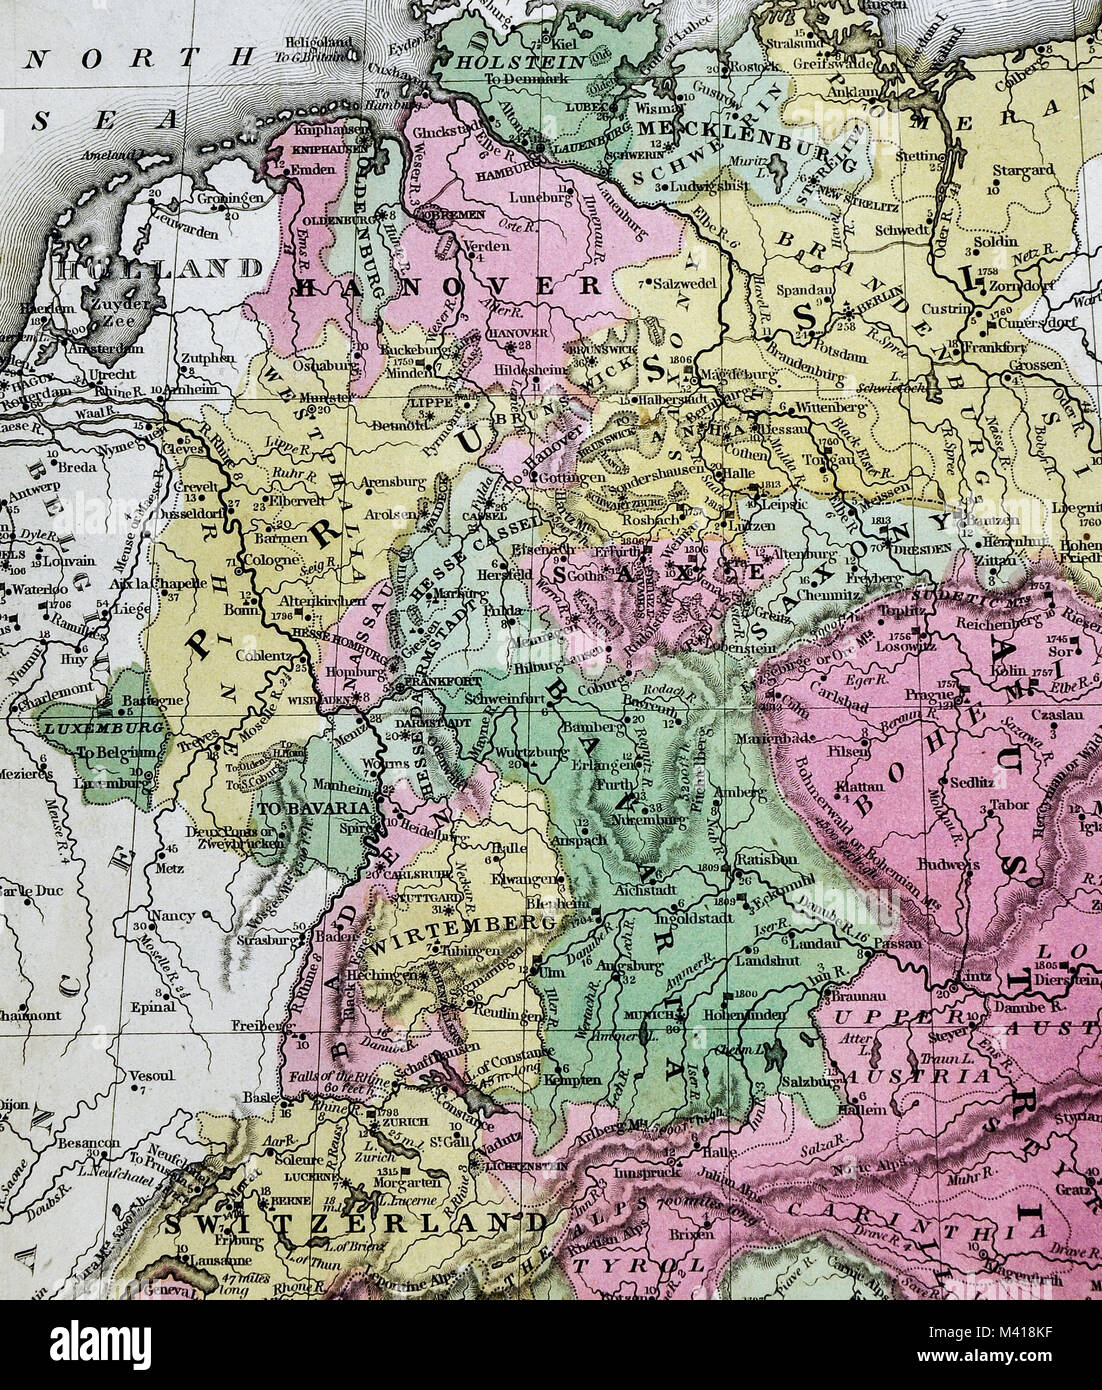 1839 Mitchell Site - Central Europe - Allemagne Suisse Autriche Italie du nord de la Bohême tchèque Bavière Banque D'Images